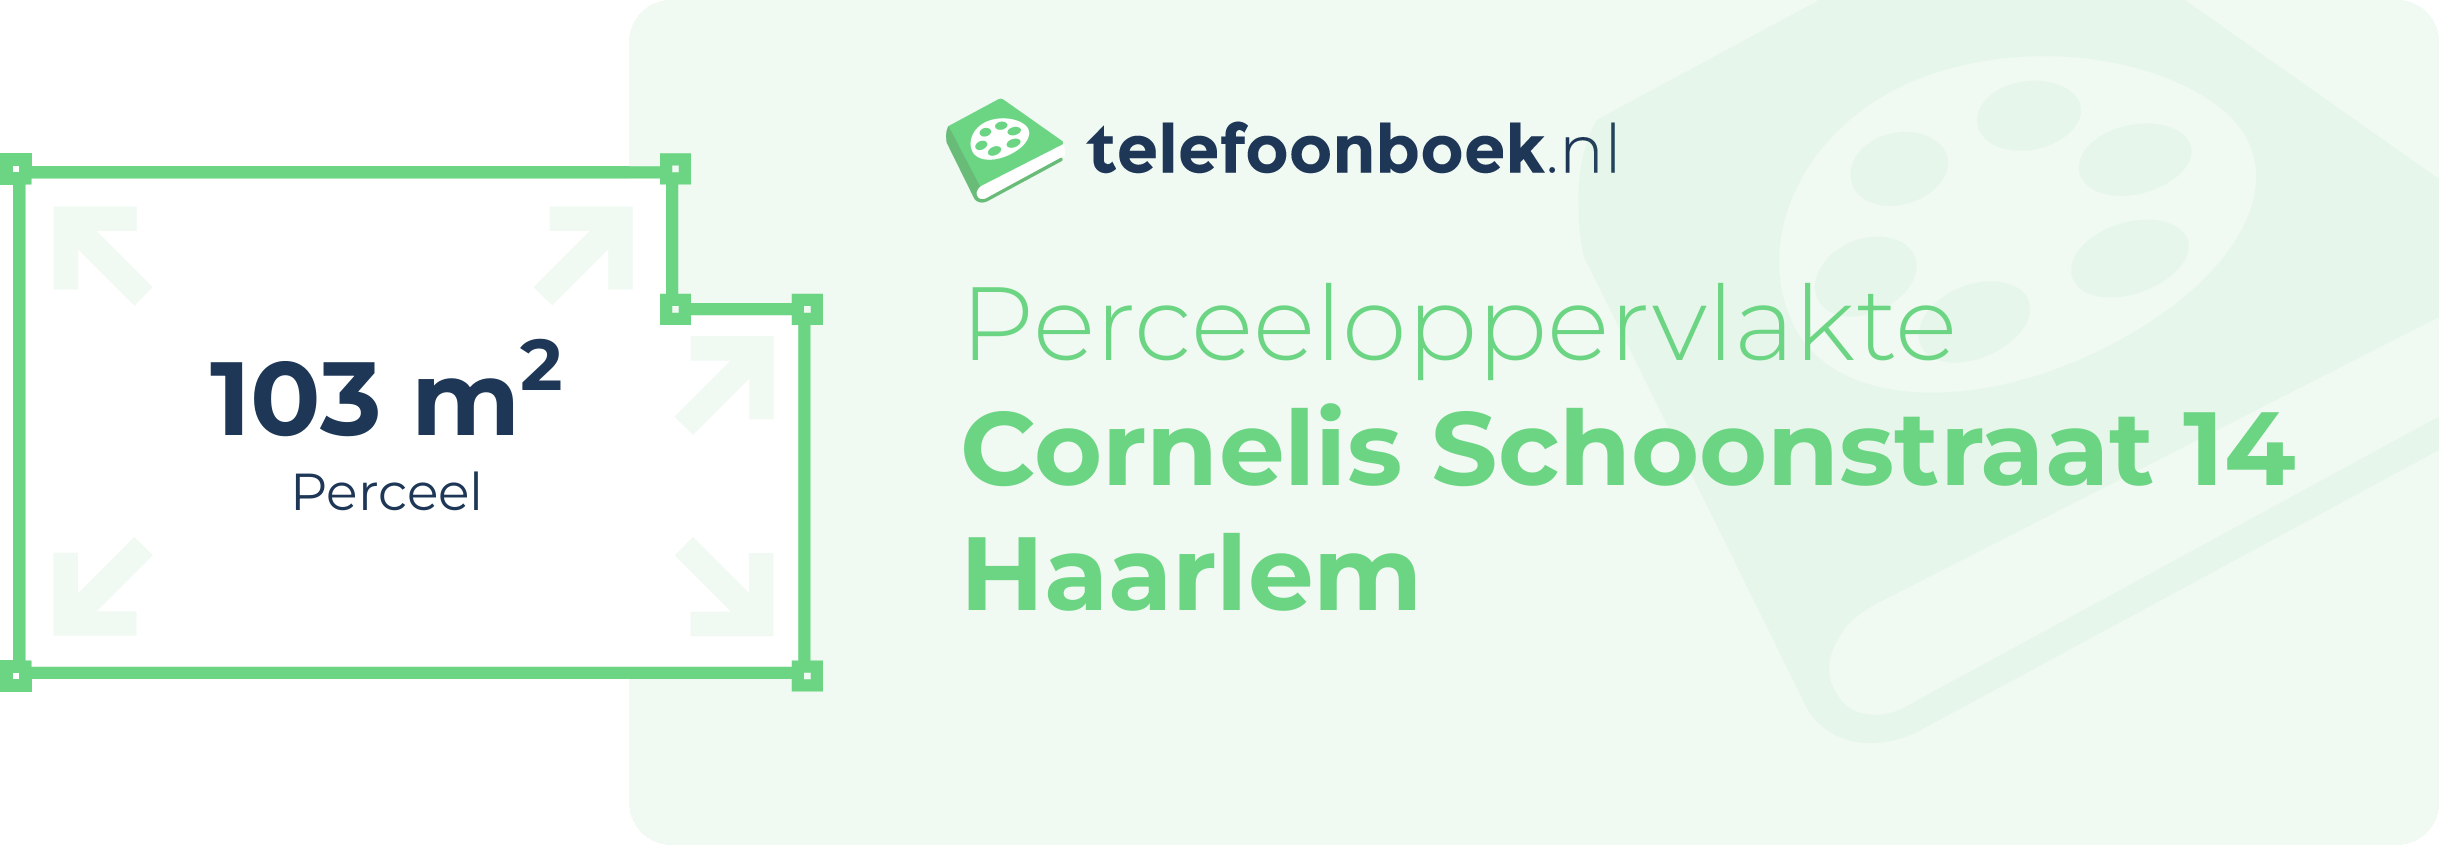 Perceeloppervlakte Cornelis Schoonstraat 14 Haarlem